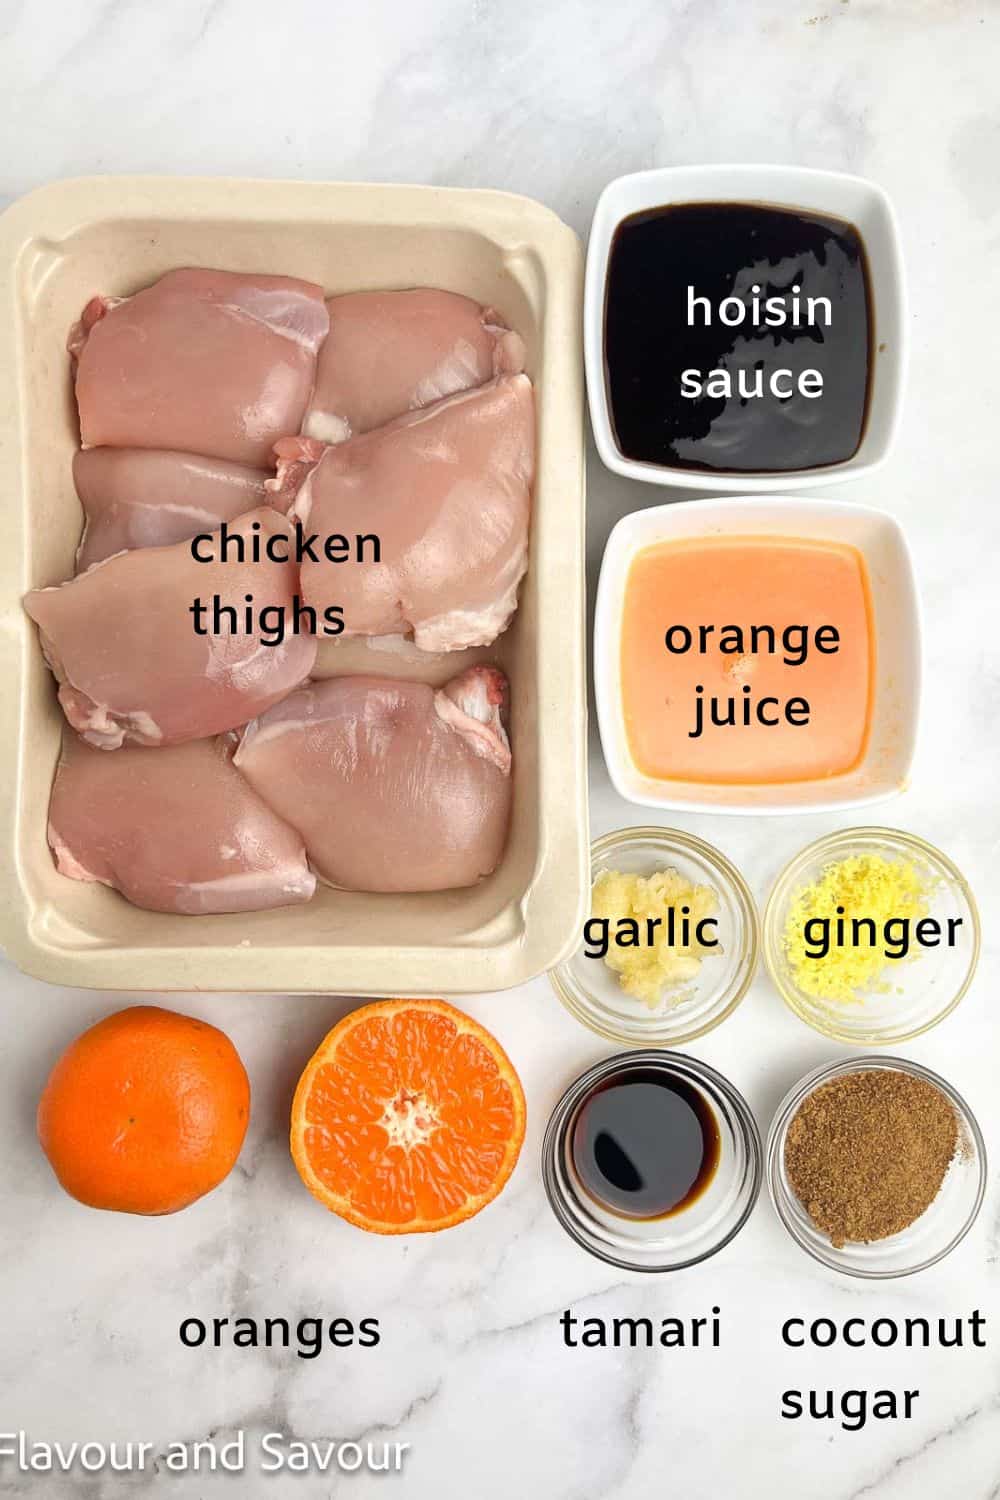 Ingredients for hoisin orange glazed chicken thighs: chicken, hoisin sauce, orange juice, ginger, garlic, tamari, coconut sugar, and oranges.